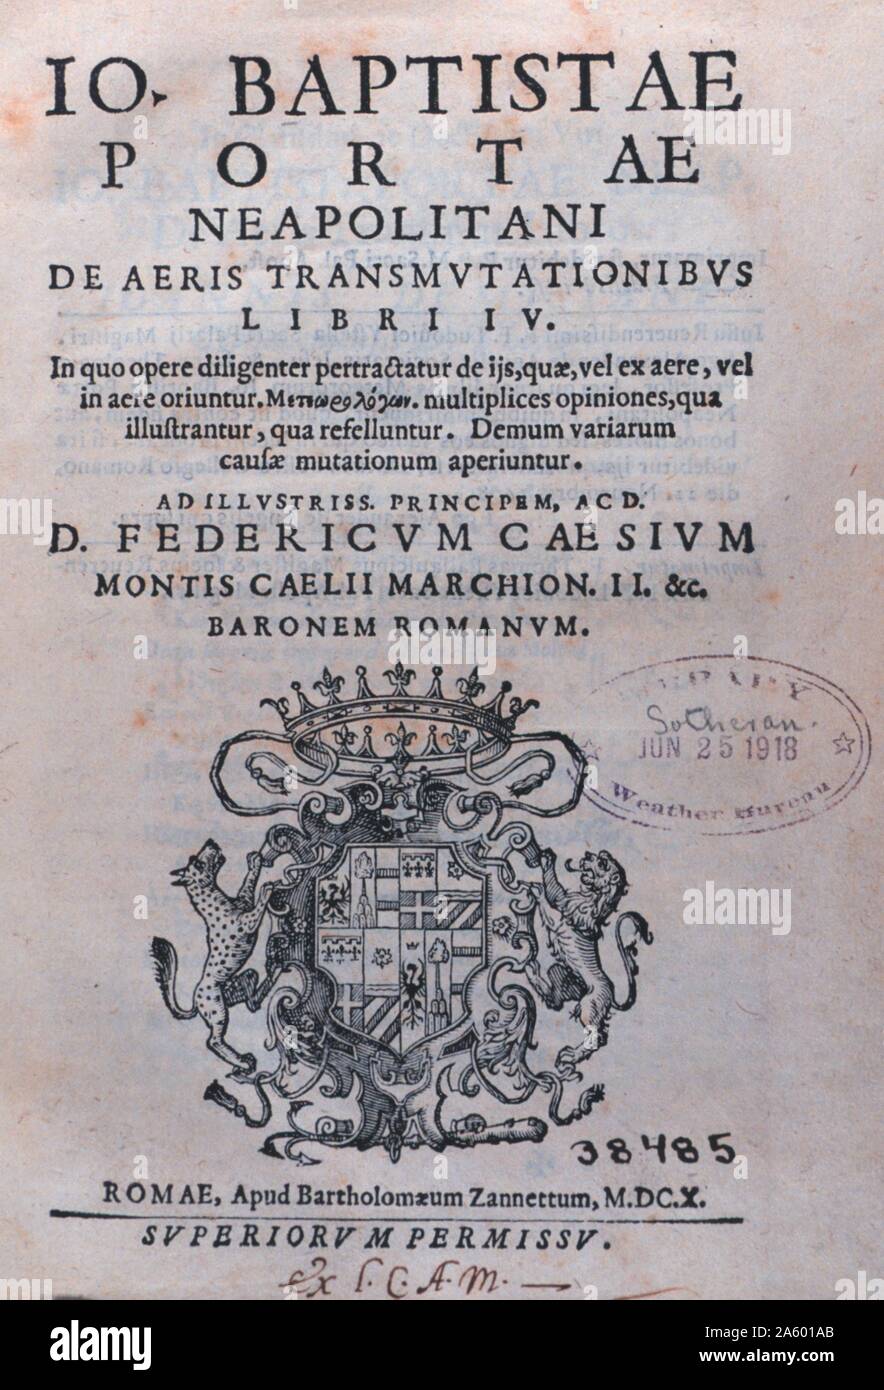 Pagina del titolo di 'De aeris transmutationibus libri IV....' da Giambattista della Porta,1535-1615. Pubblicato in 1614. Foto Stock